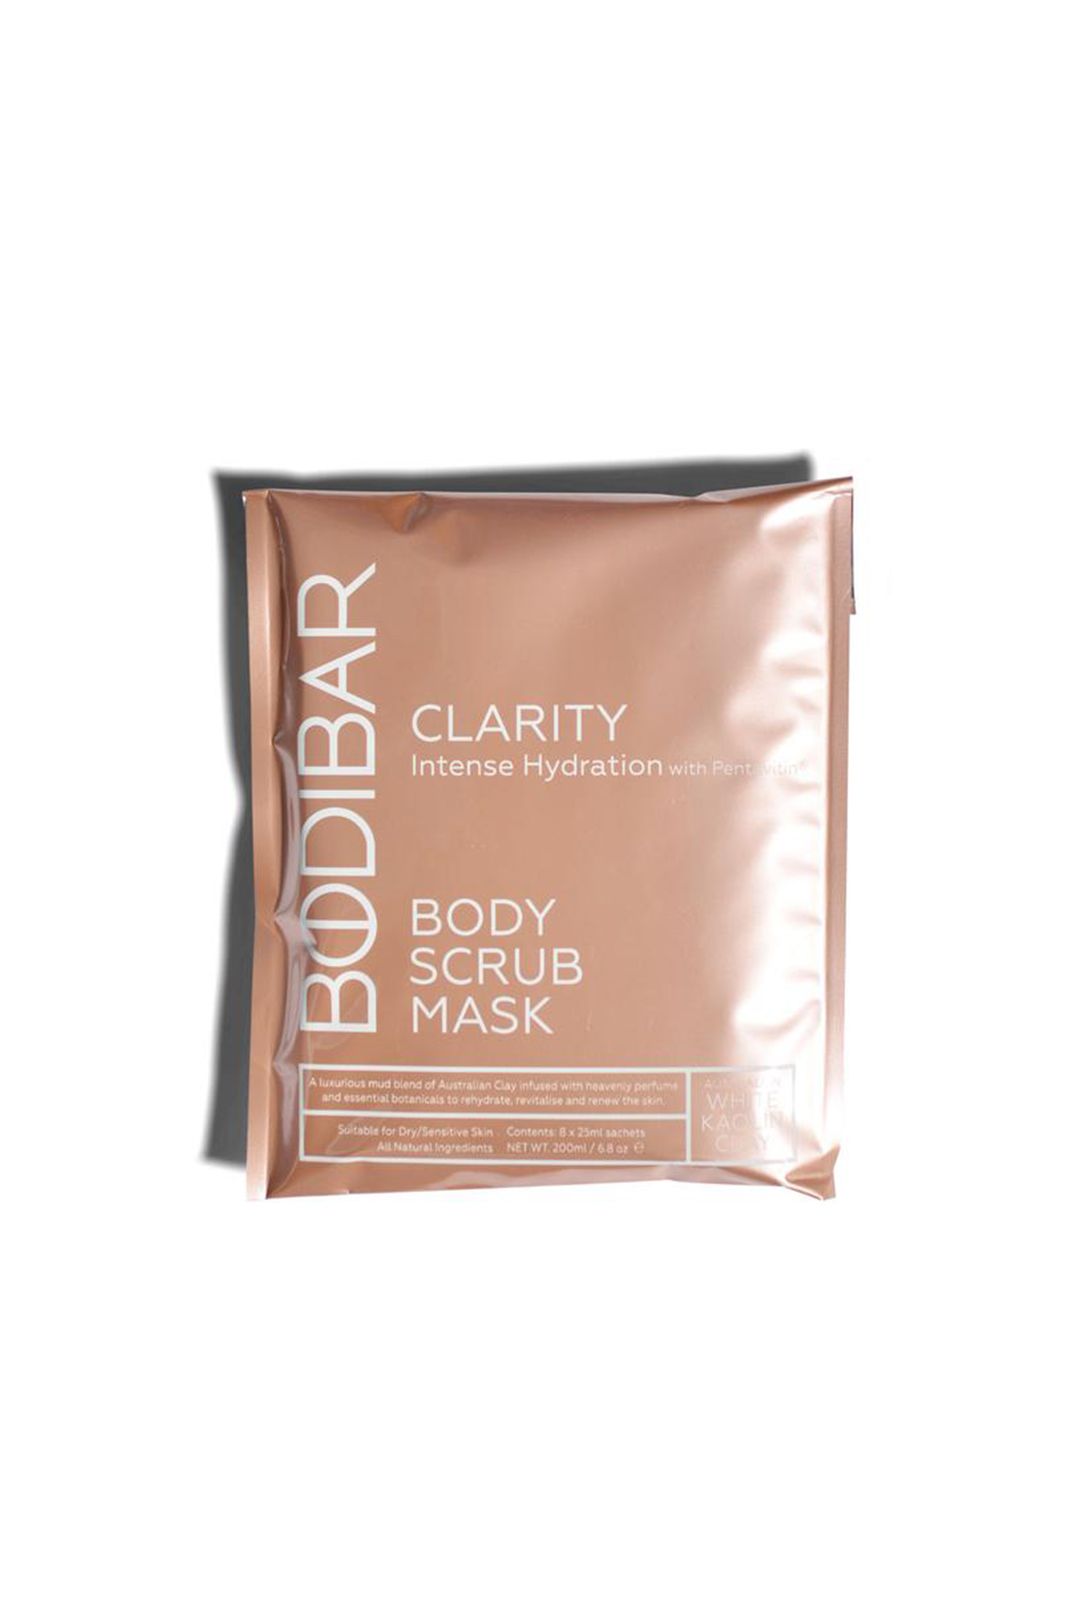 bodibar-body-scrub-mud-masks-clarity-intense-hydration-mud-body-treatment-product